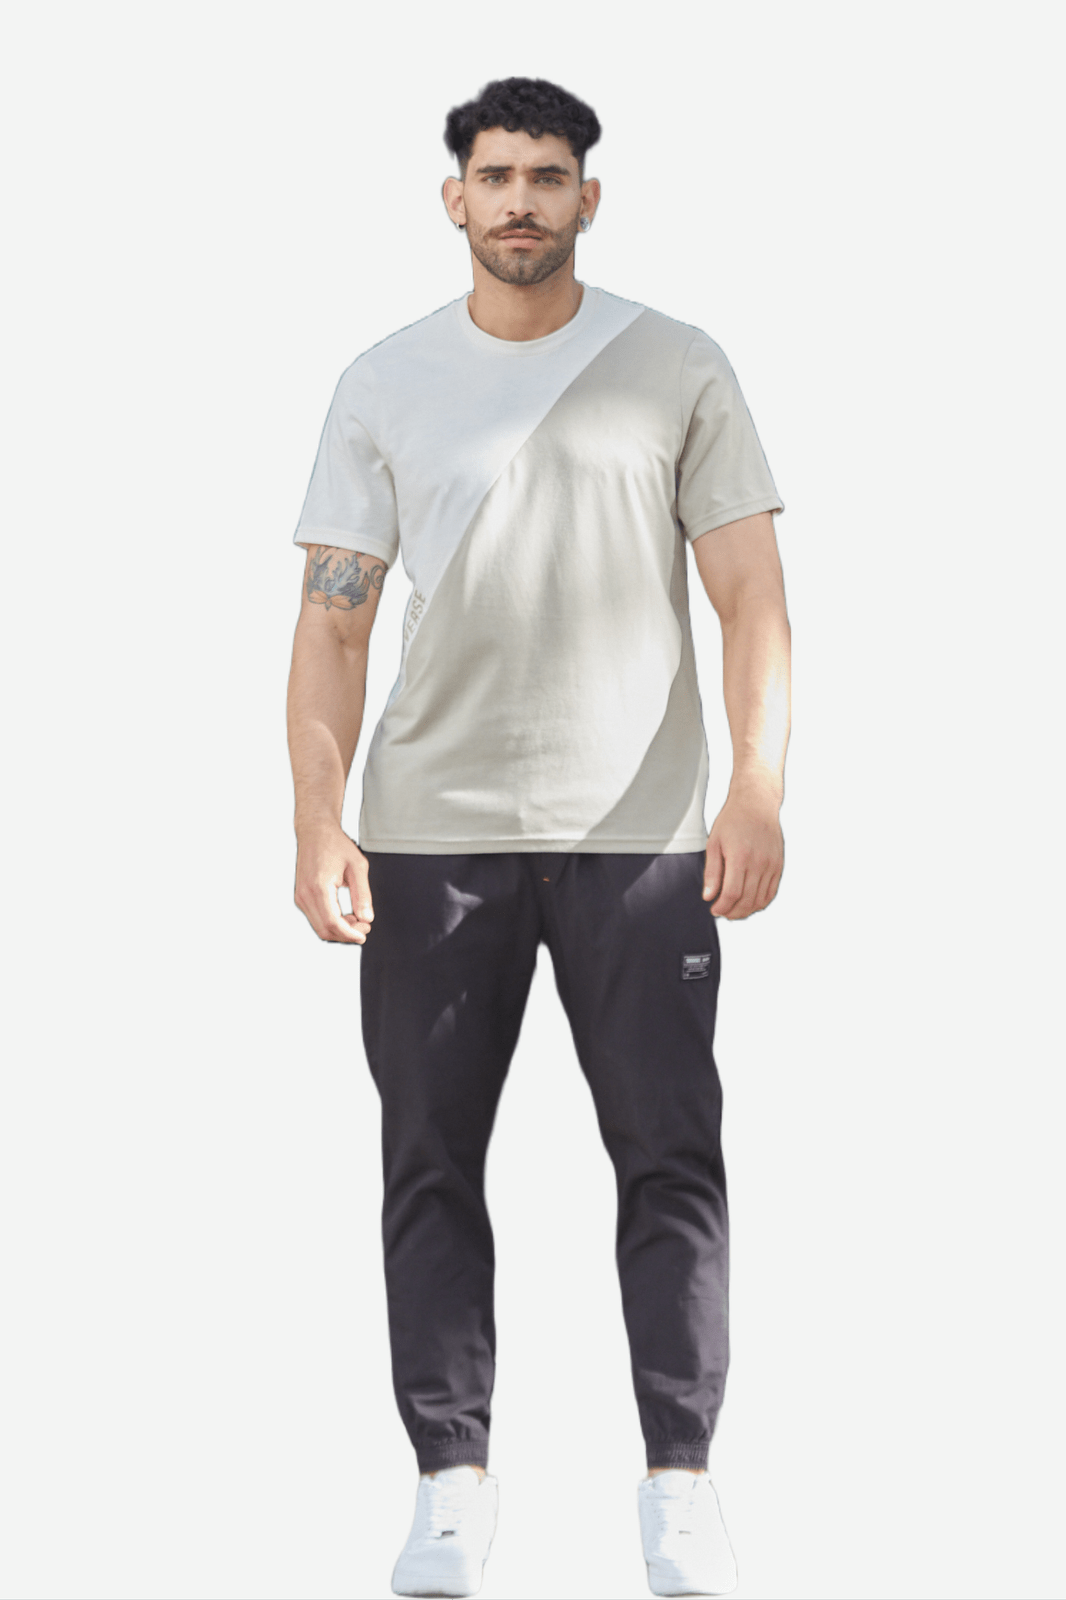 Camiseta blanca en bloques diagonales en contraste, cuello redondo y manga corta para hombre